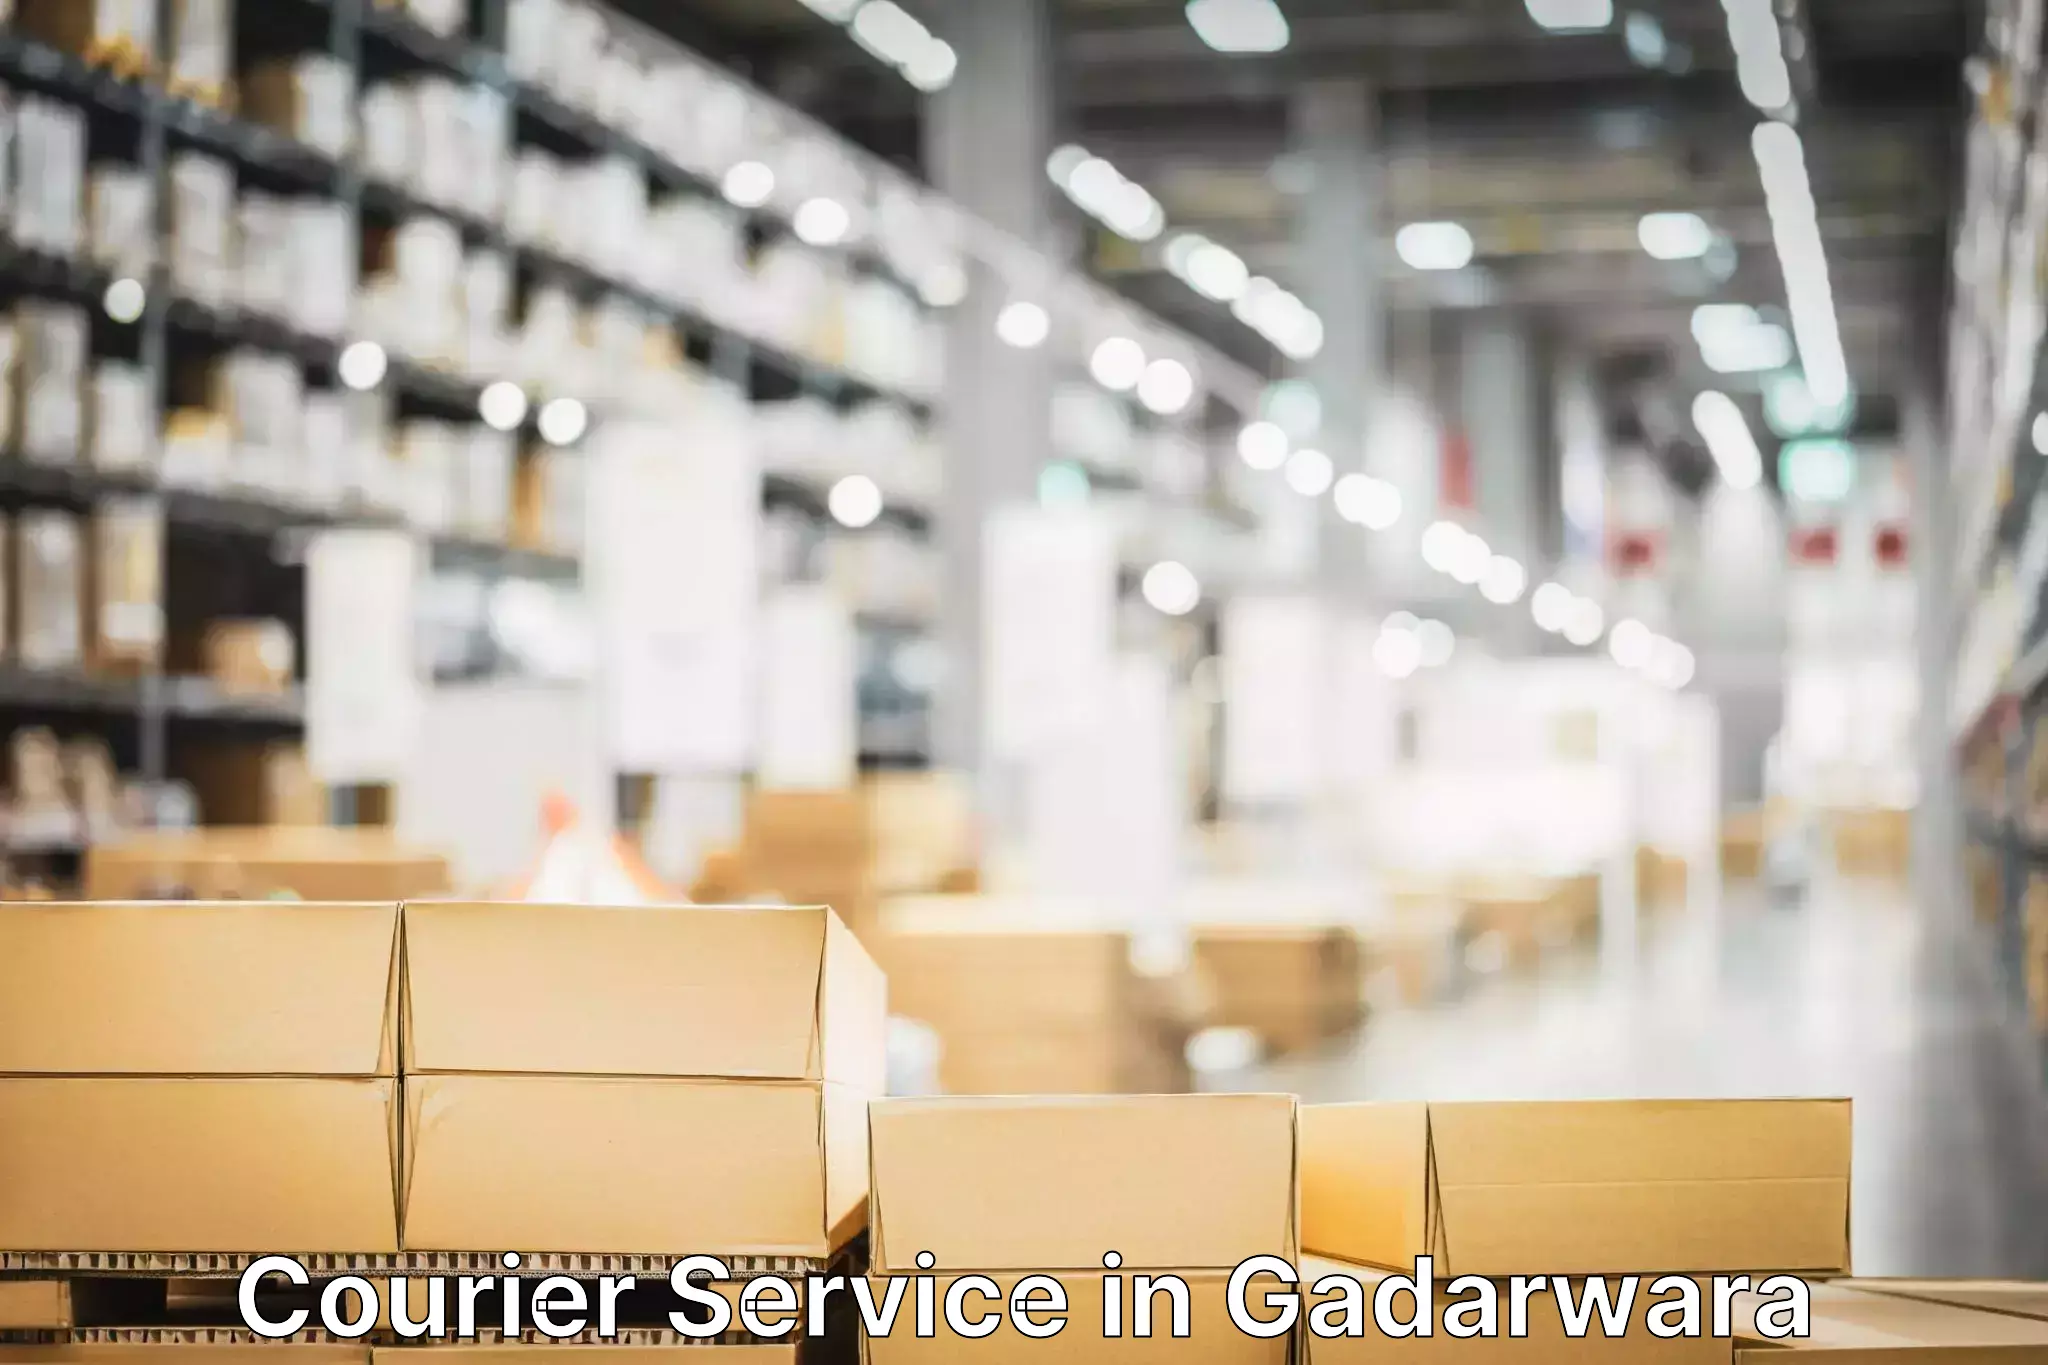 Enhanced delivery experience in Gadarwara